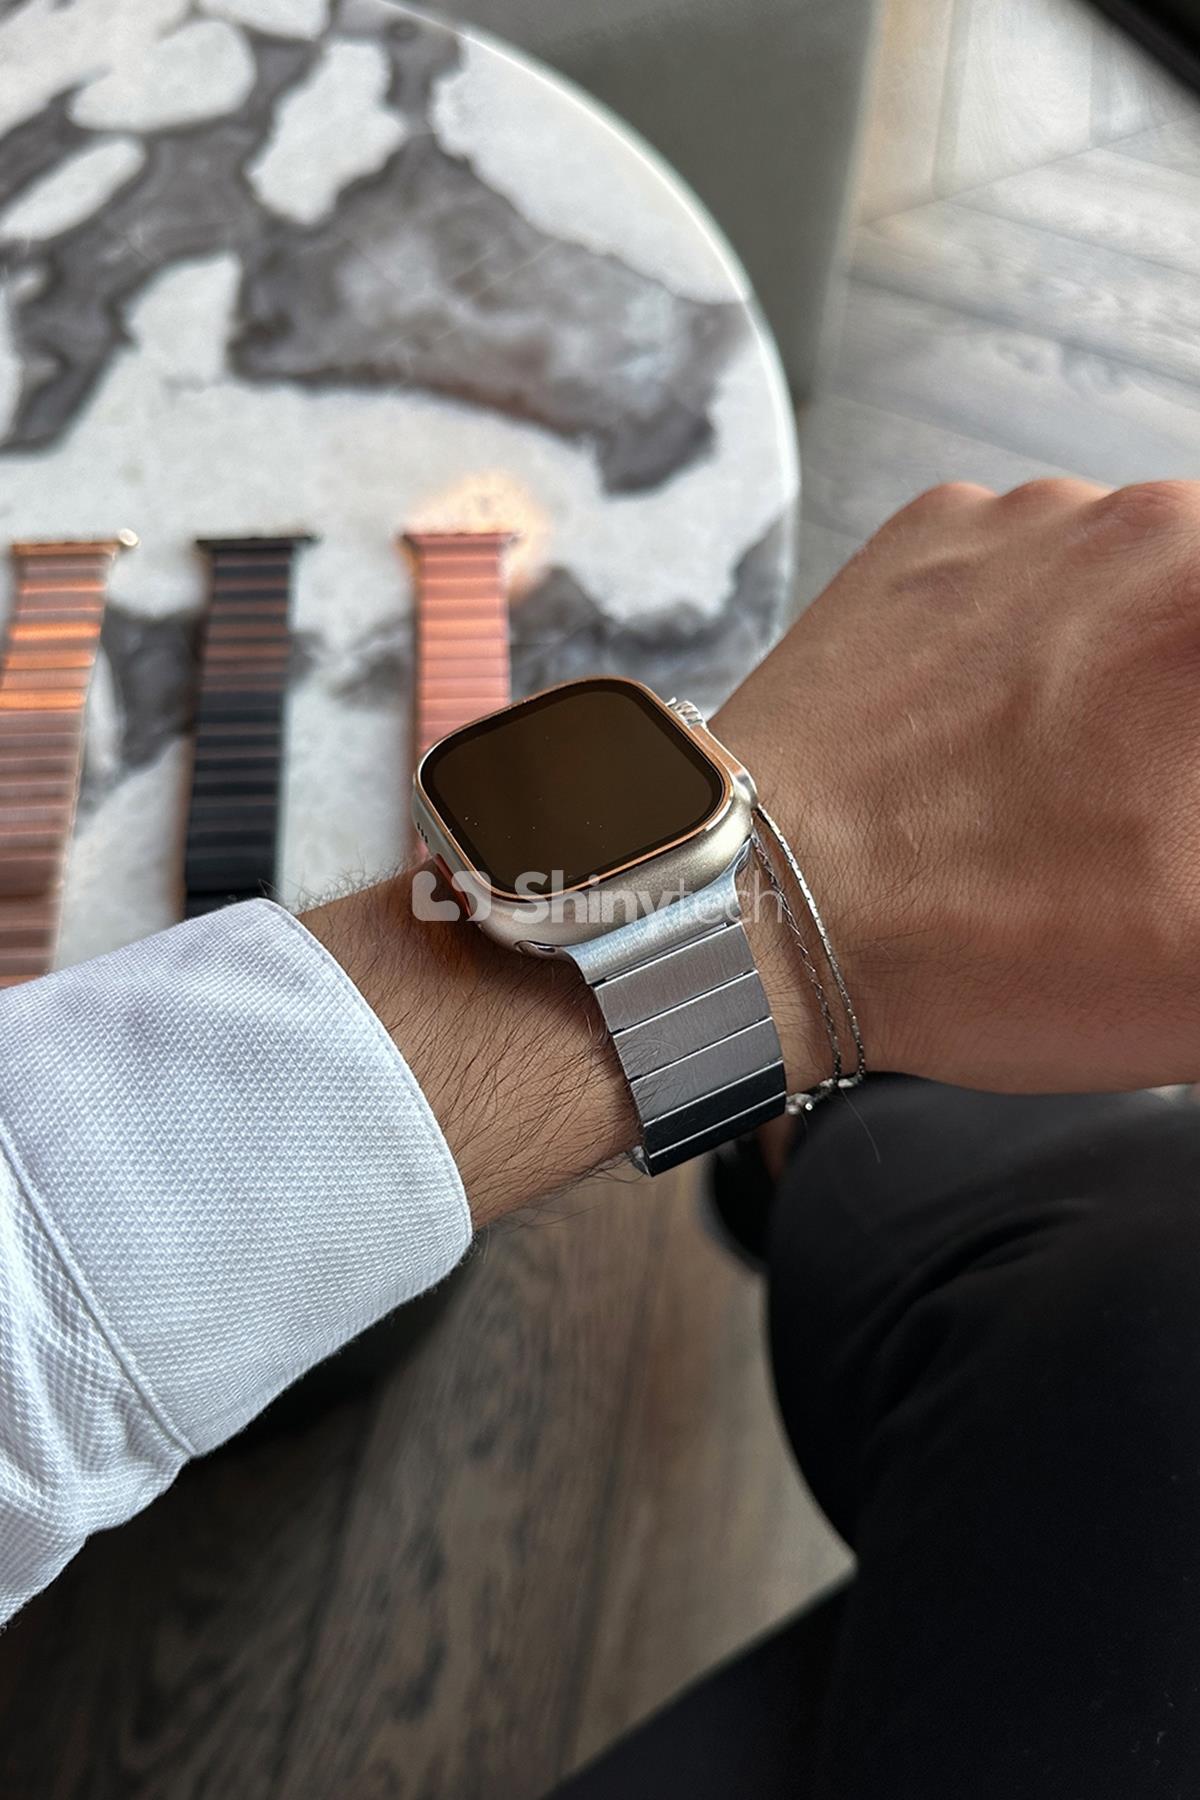 Gümüş Apple Watch Uyumlu Baklalı Çelik Kordon Modelleri | ShinyTech